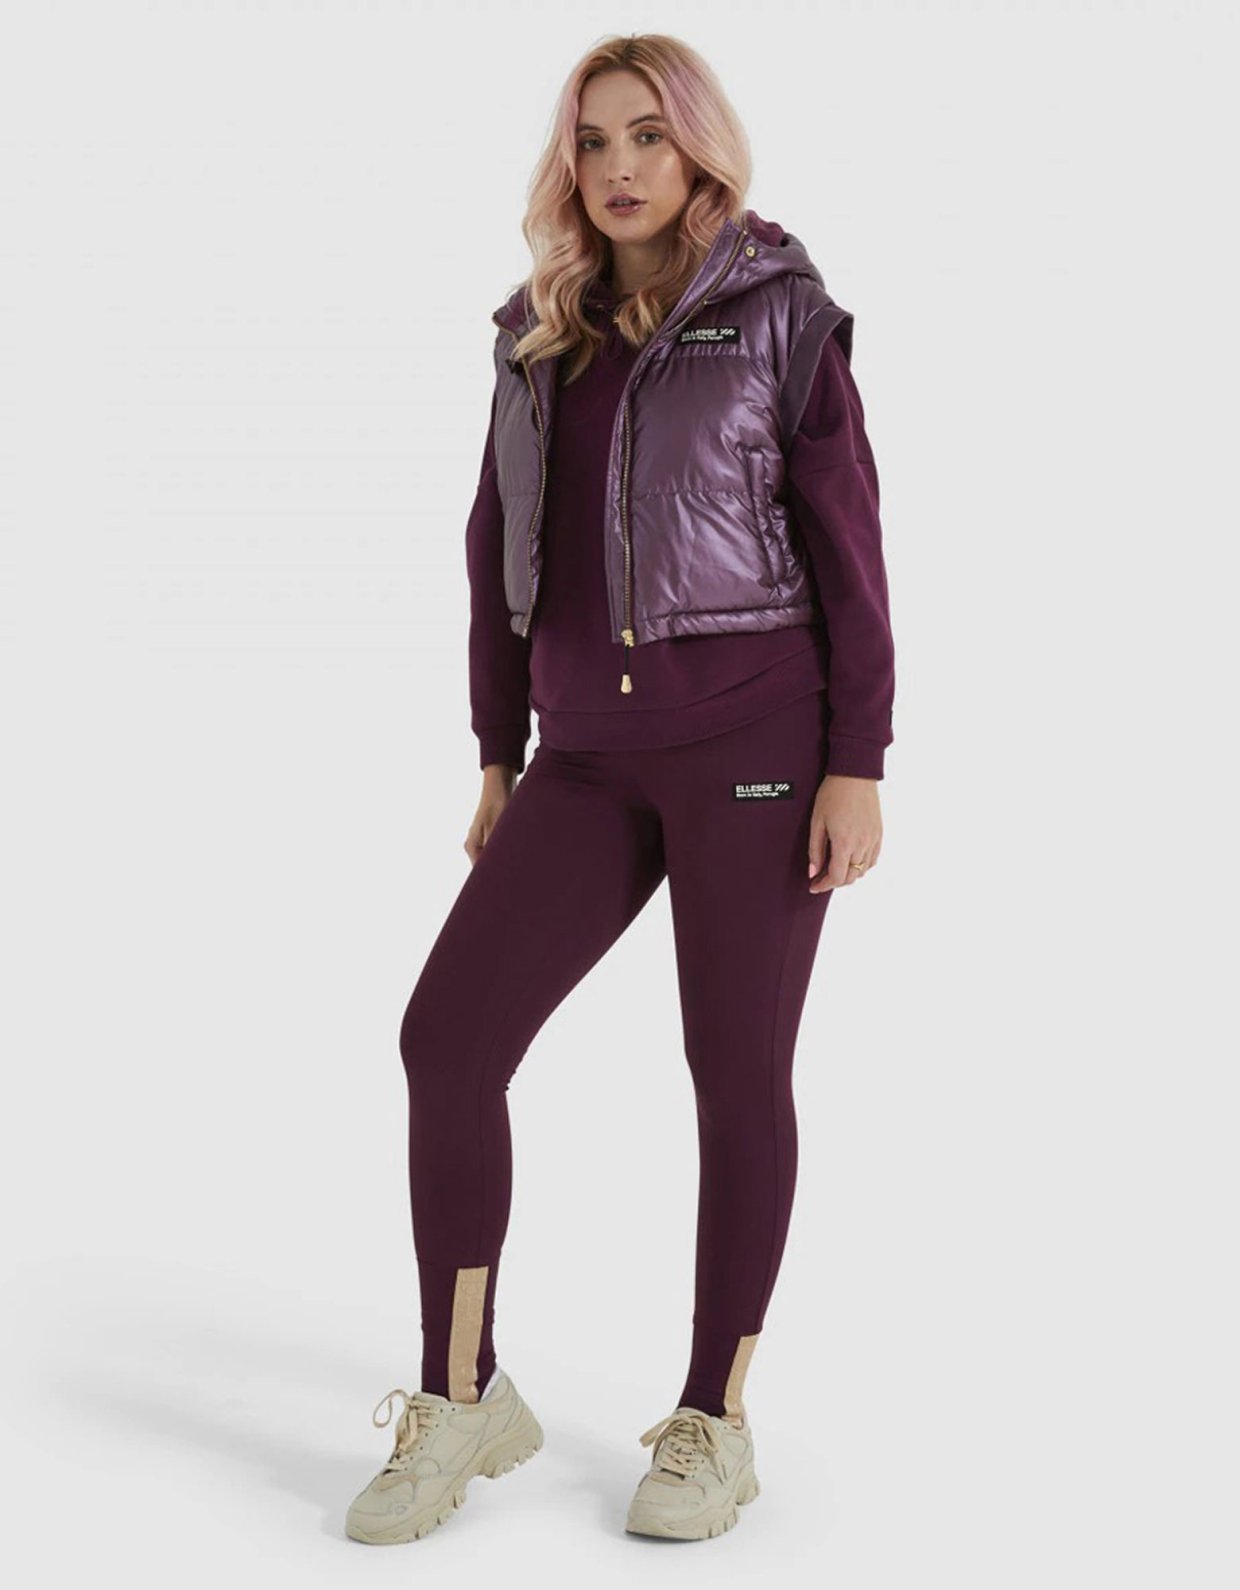 Ellesse Apennines legging dark purple